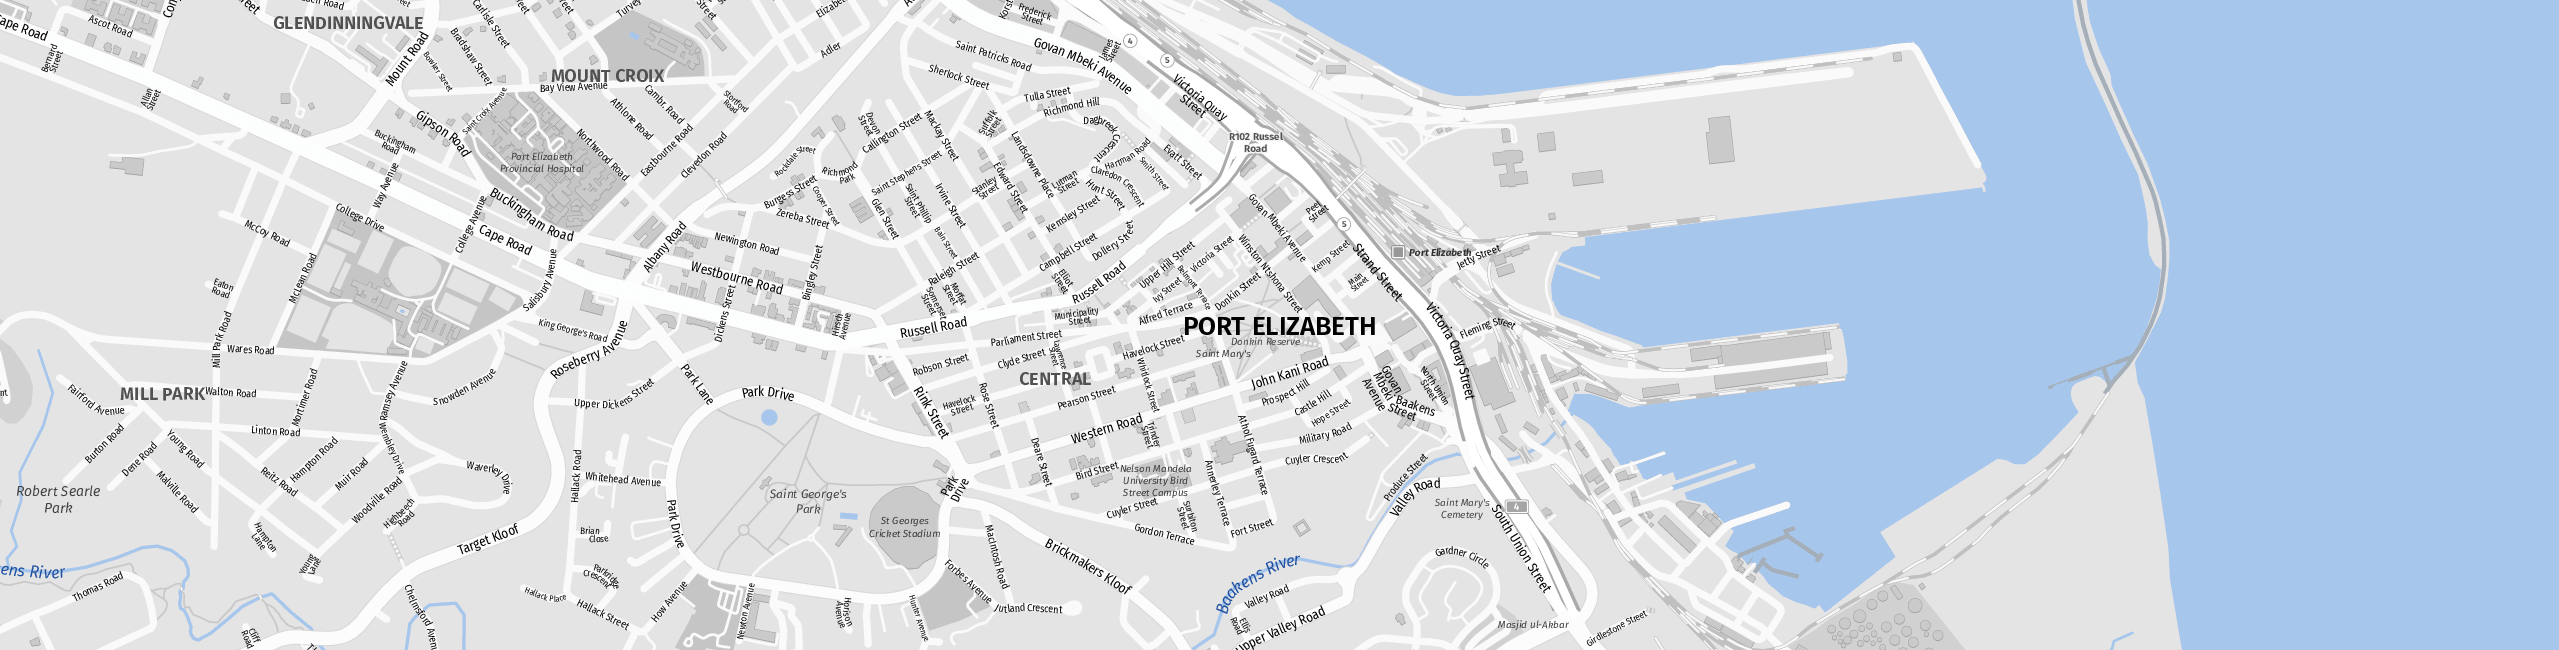 Stadtplan Port Elizabeth zum Downloaden.